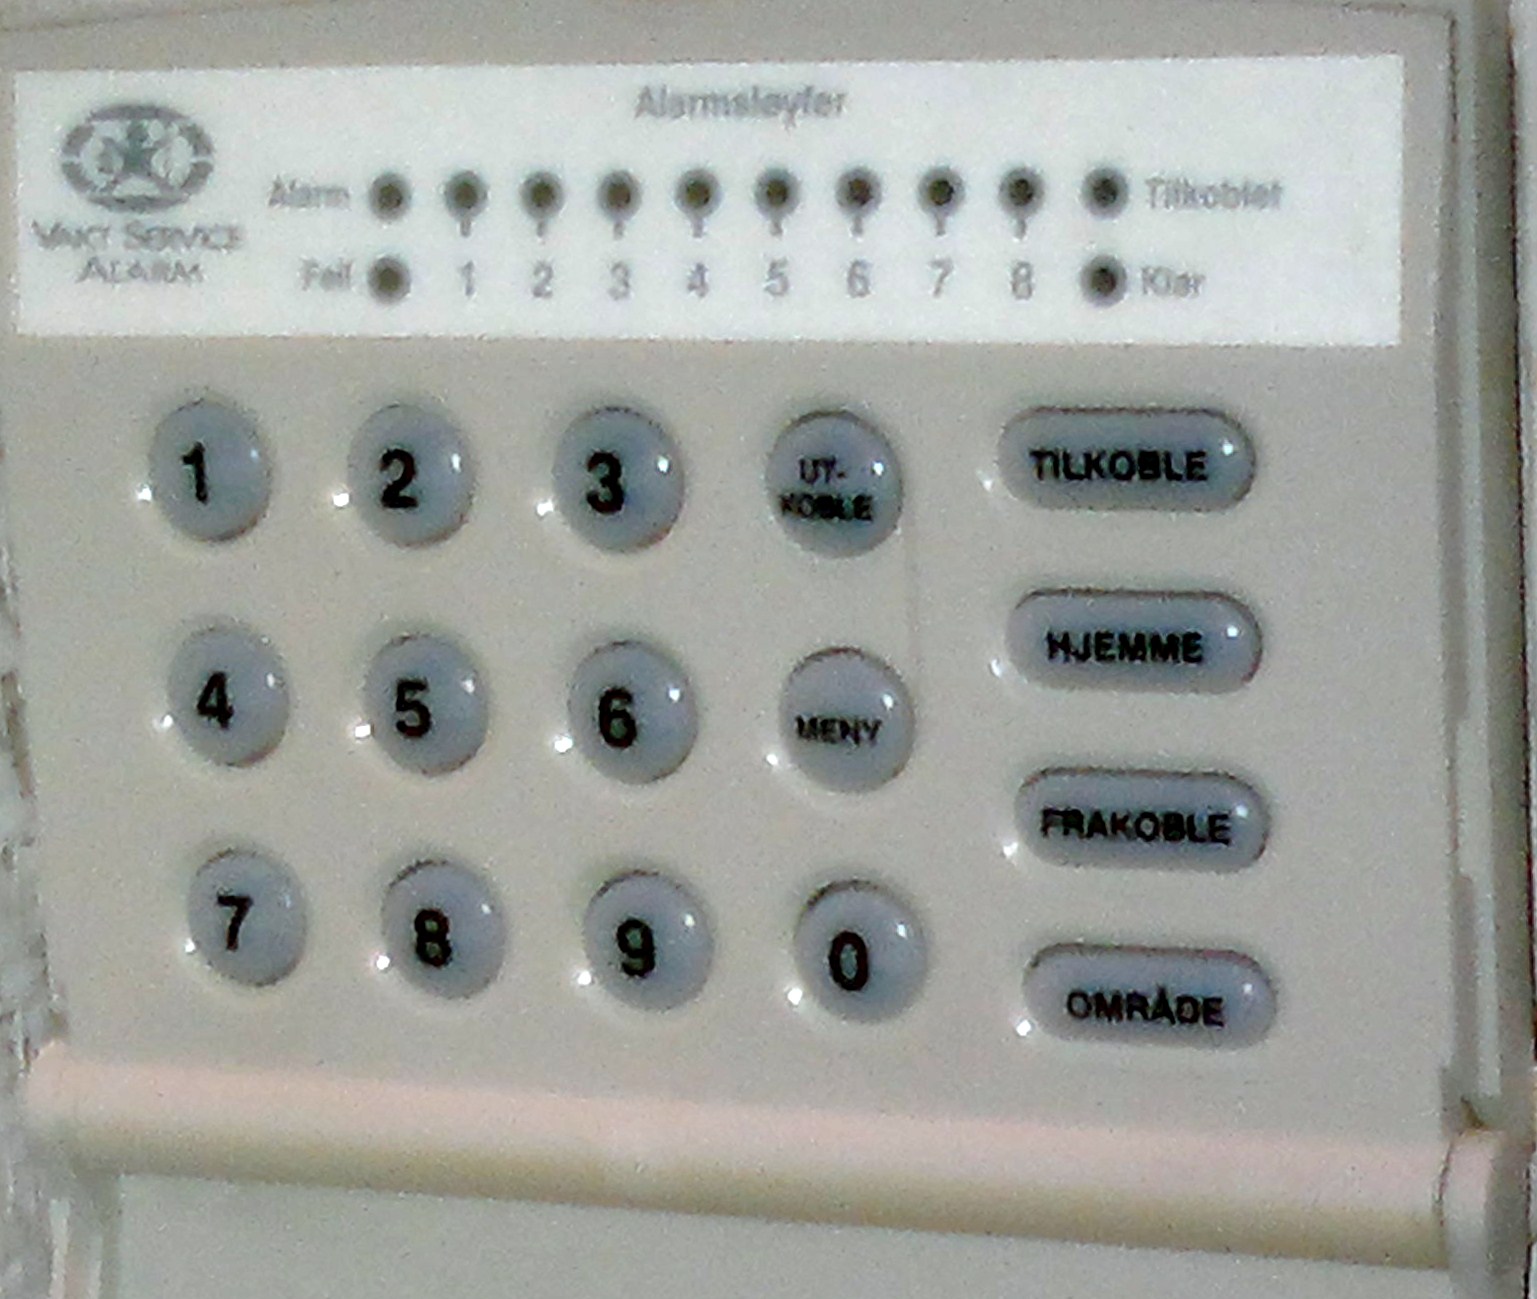 Brukermanual: Vaktservice alarmpanel (1998 model?) - 29012012577.jpg - dkt850